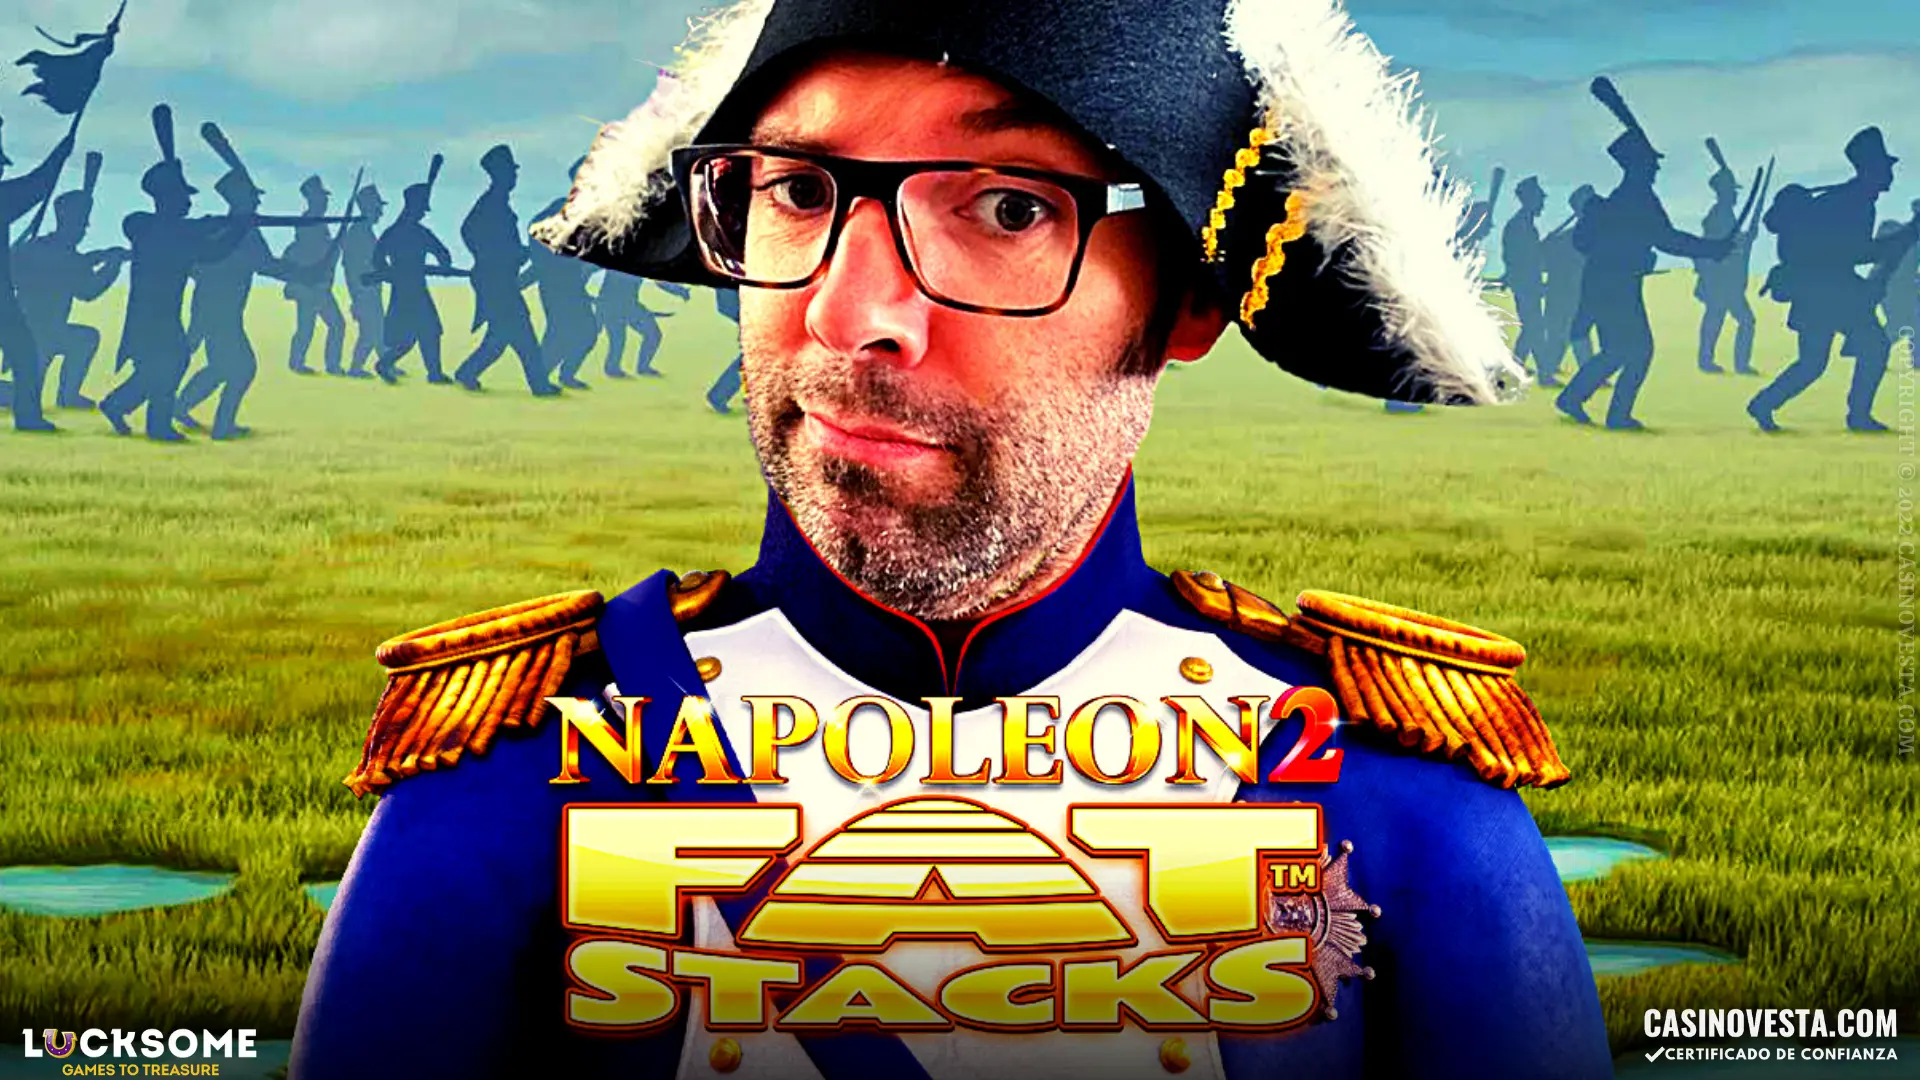 La tragamonedas Napoleón 2 FatStacks: Preguntas y respuestas exclusivas